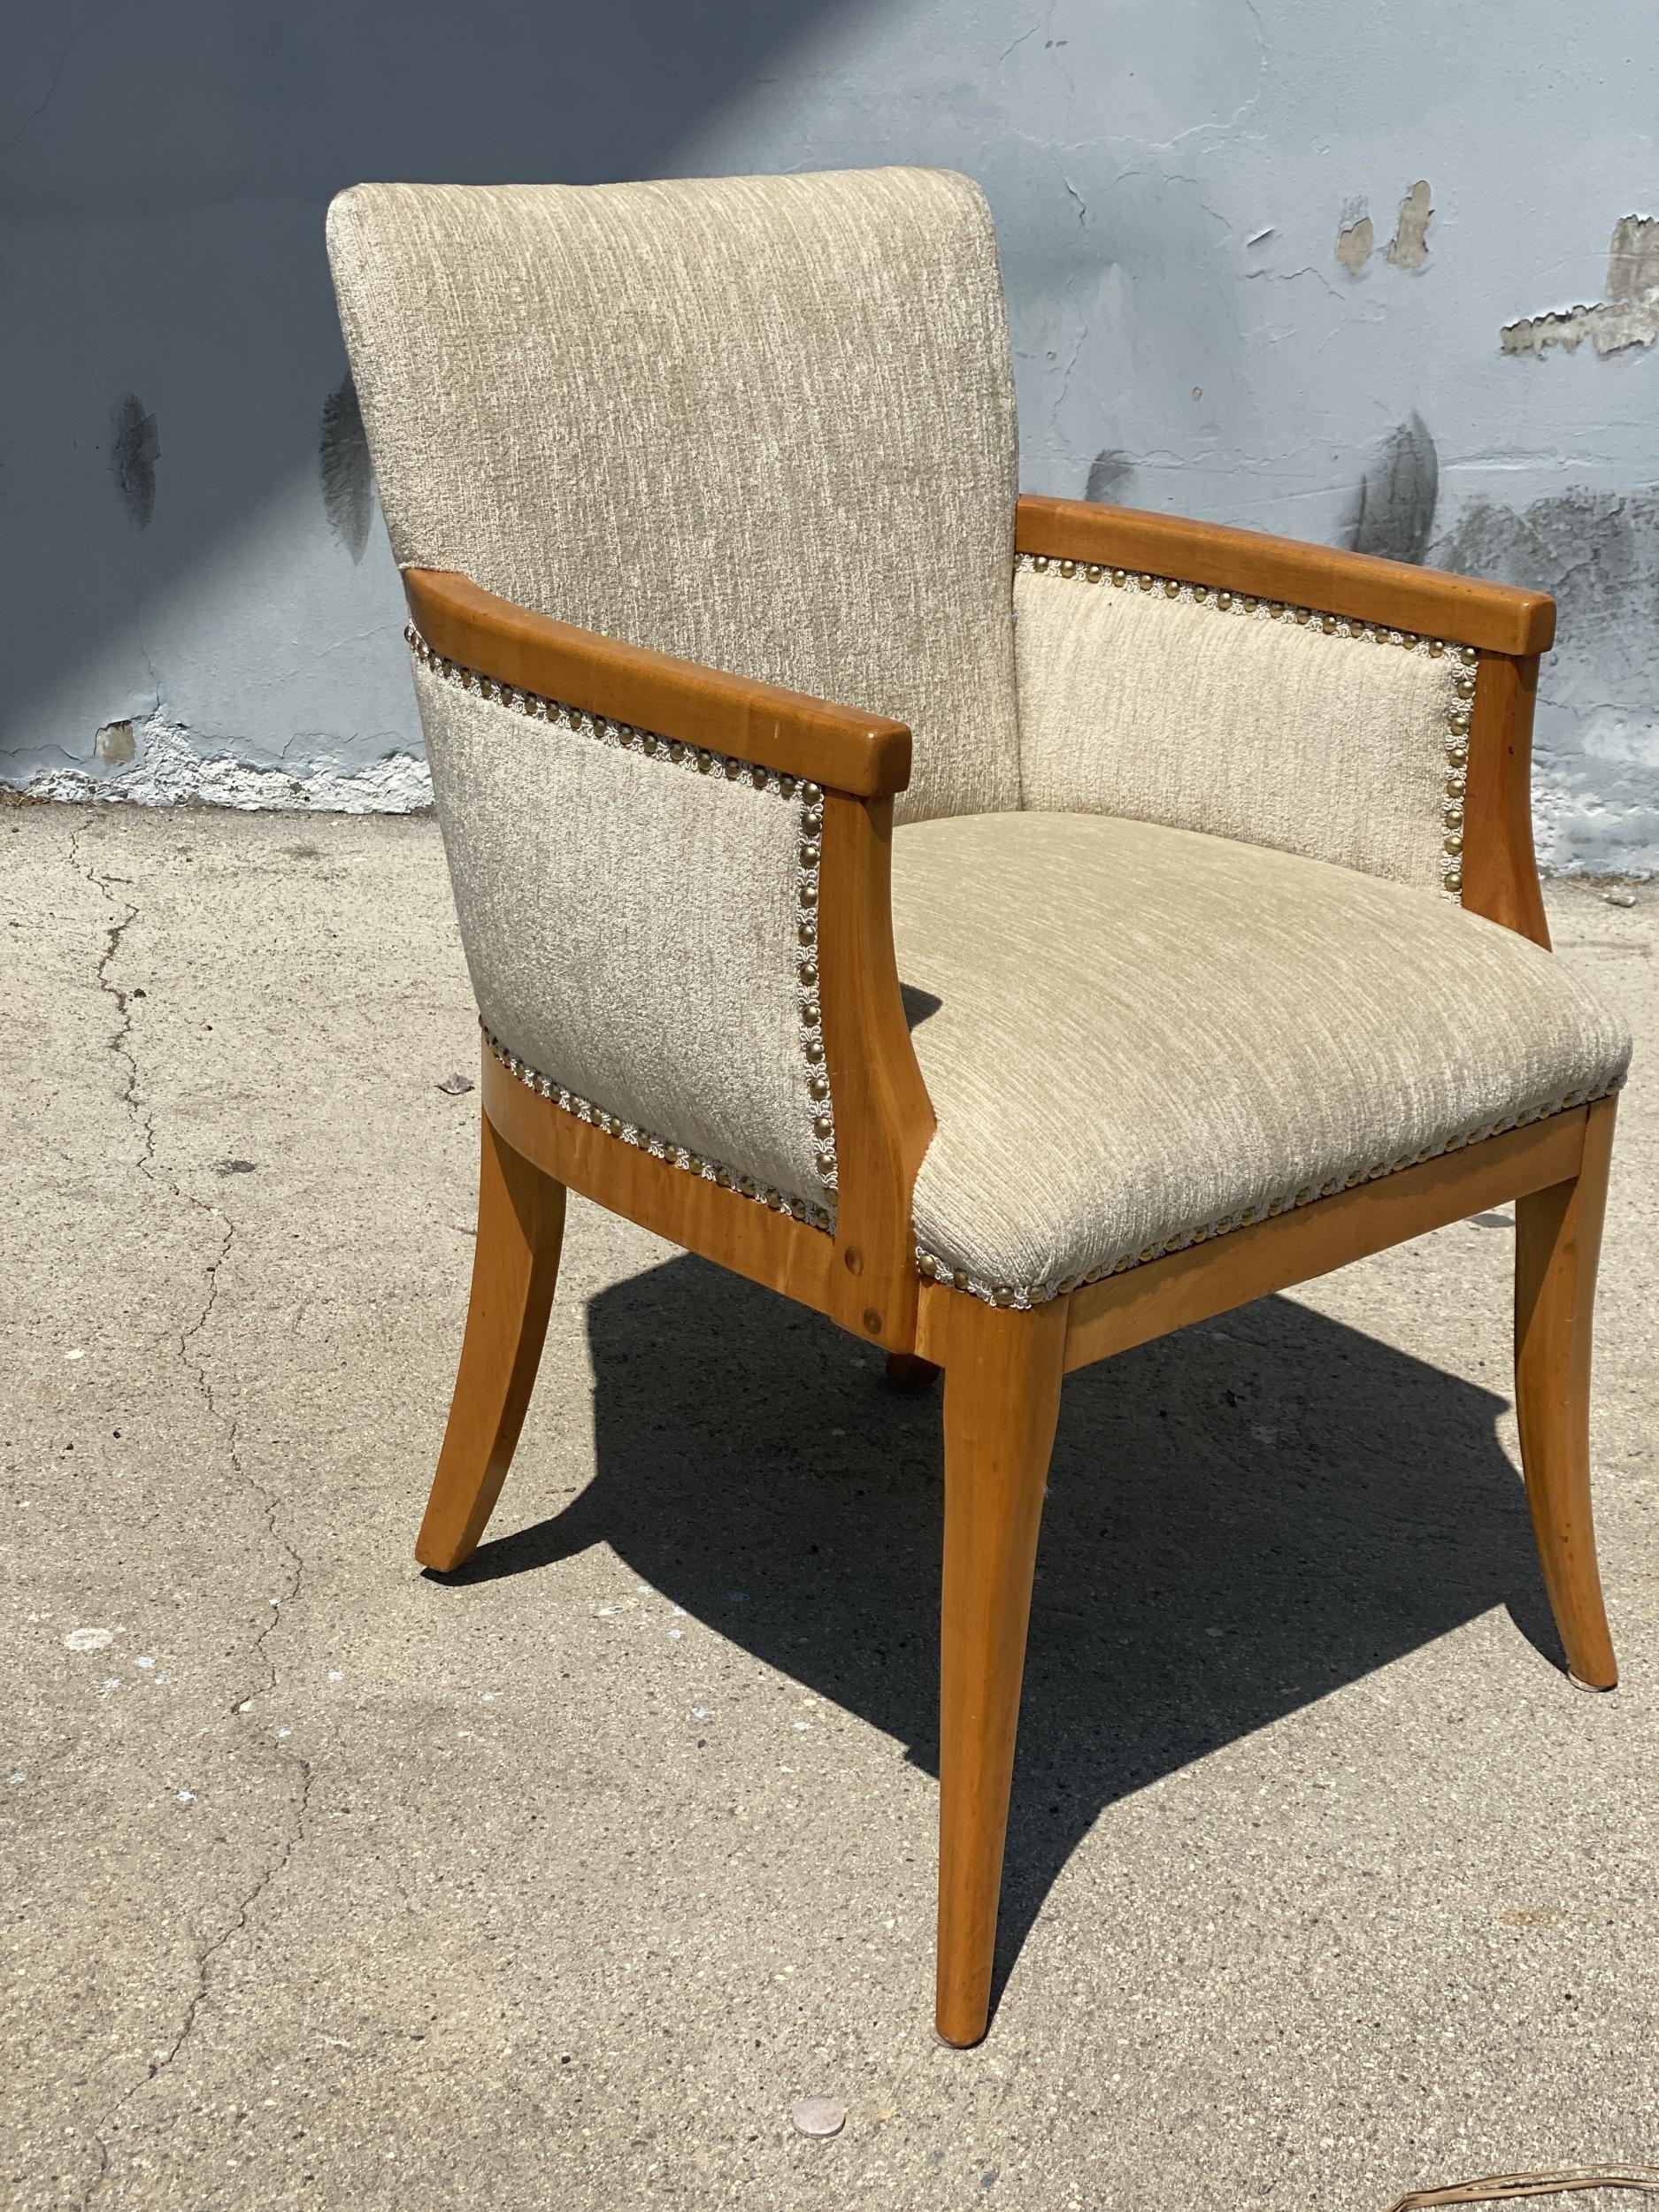 Moderner Heywood Wakefield Lesesessel mit stilisiertem Hocker um 1950. Der Stuhl ist mit einer schönen Holzumrandung mit Nagelrückendekoration und konischen Beinen ausgestattet. Die Ottomane verfügt über eine große, gepolsterte Platte und